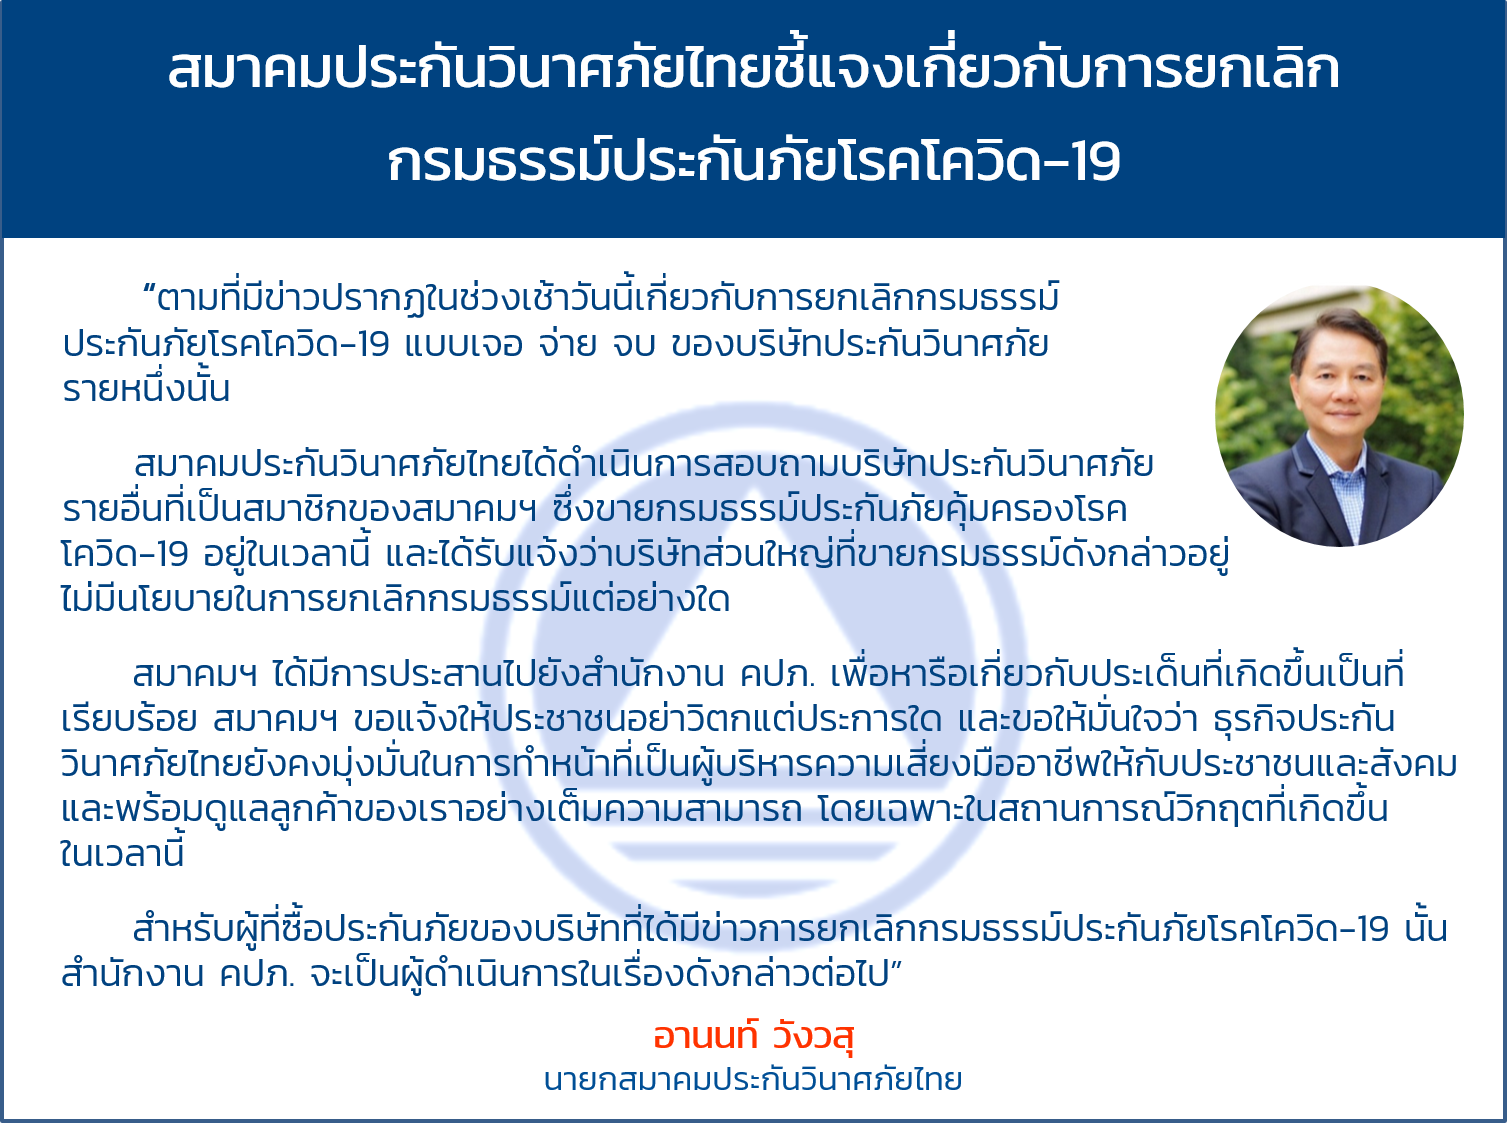 สมาคมประกันวินาศภัยไทยชี้แจงเกี่ยวกับการยกเลิกกรมธรรม์ประกันภัยโรคโควิด-19